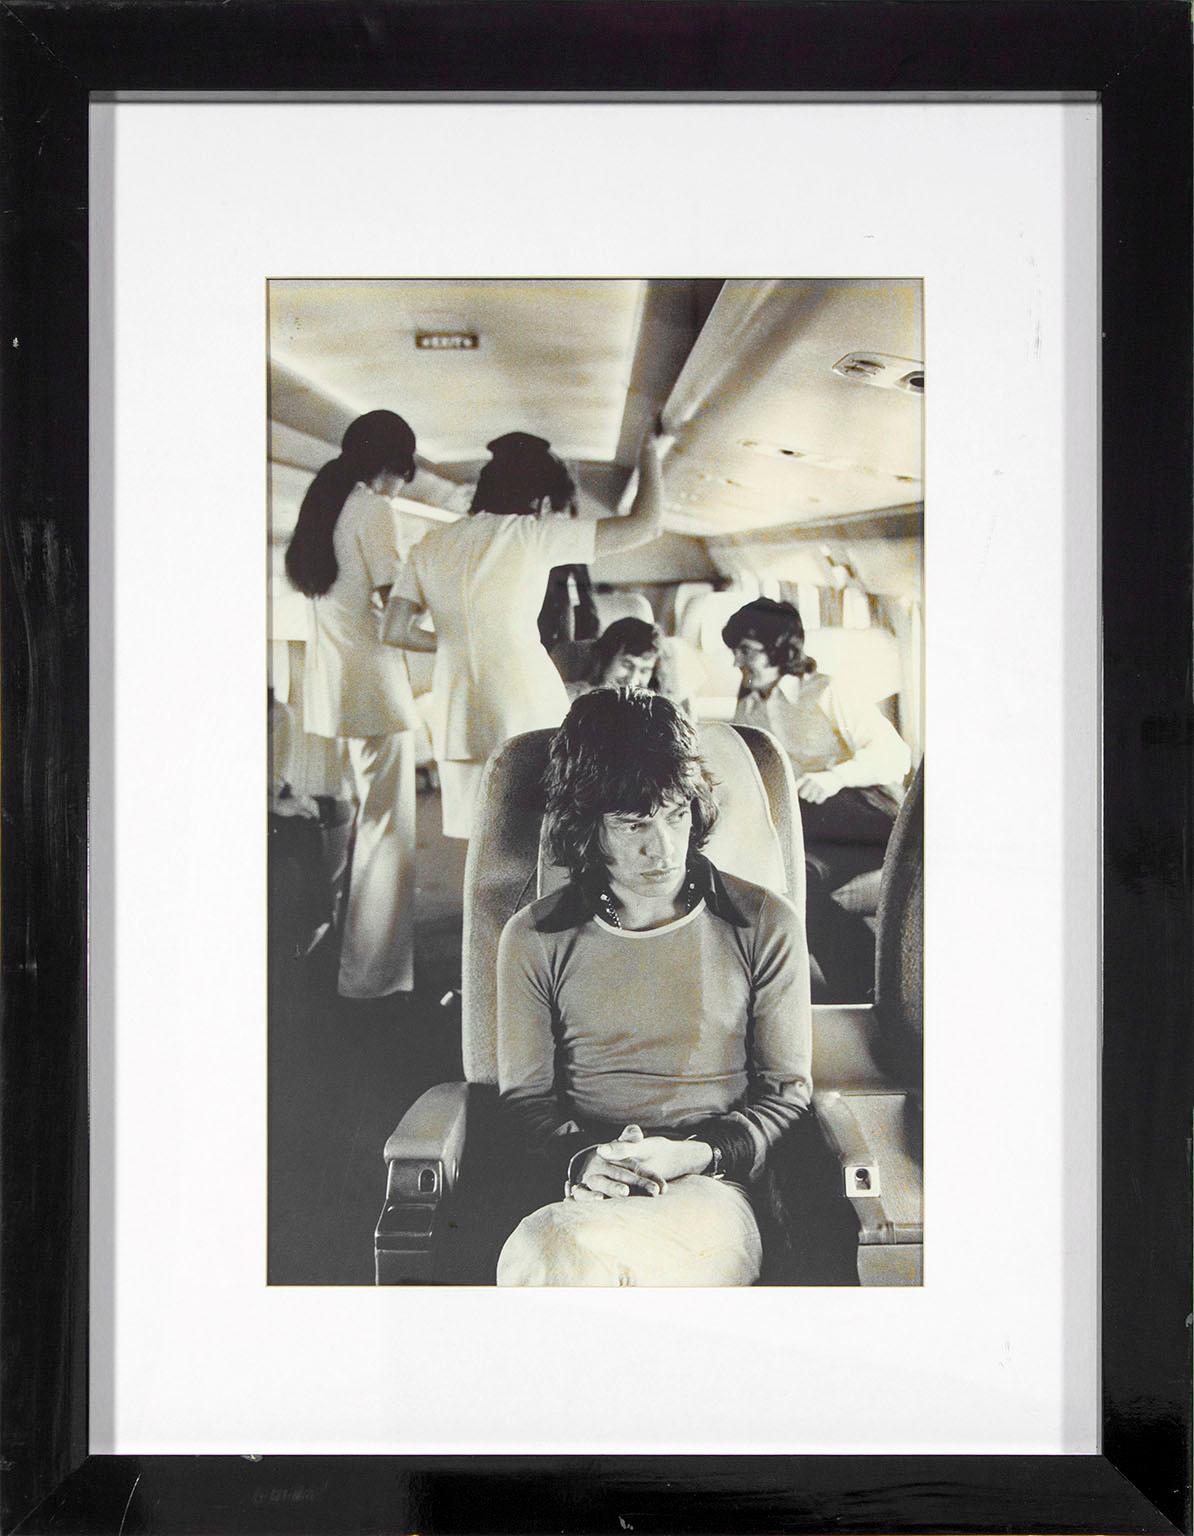 "Mick Jagger on Tour Plane 1972", photographie en noir et blanc de Jim Marshall. Taille de l'image : 22 1/2 x 14 1/2 pouces. Cette photographie encadrée a été exposée dans une chambre d'hôte du Hard Rock Hotel and Casino à Las Vegas, Nevada. Elle